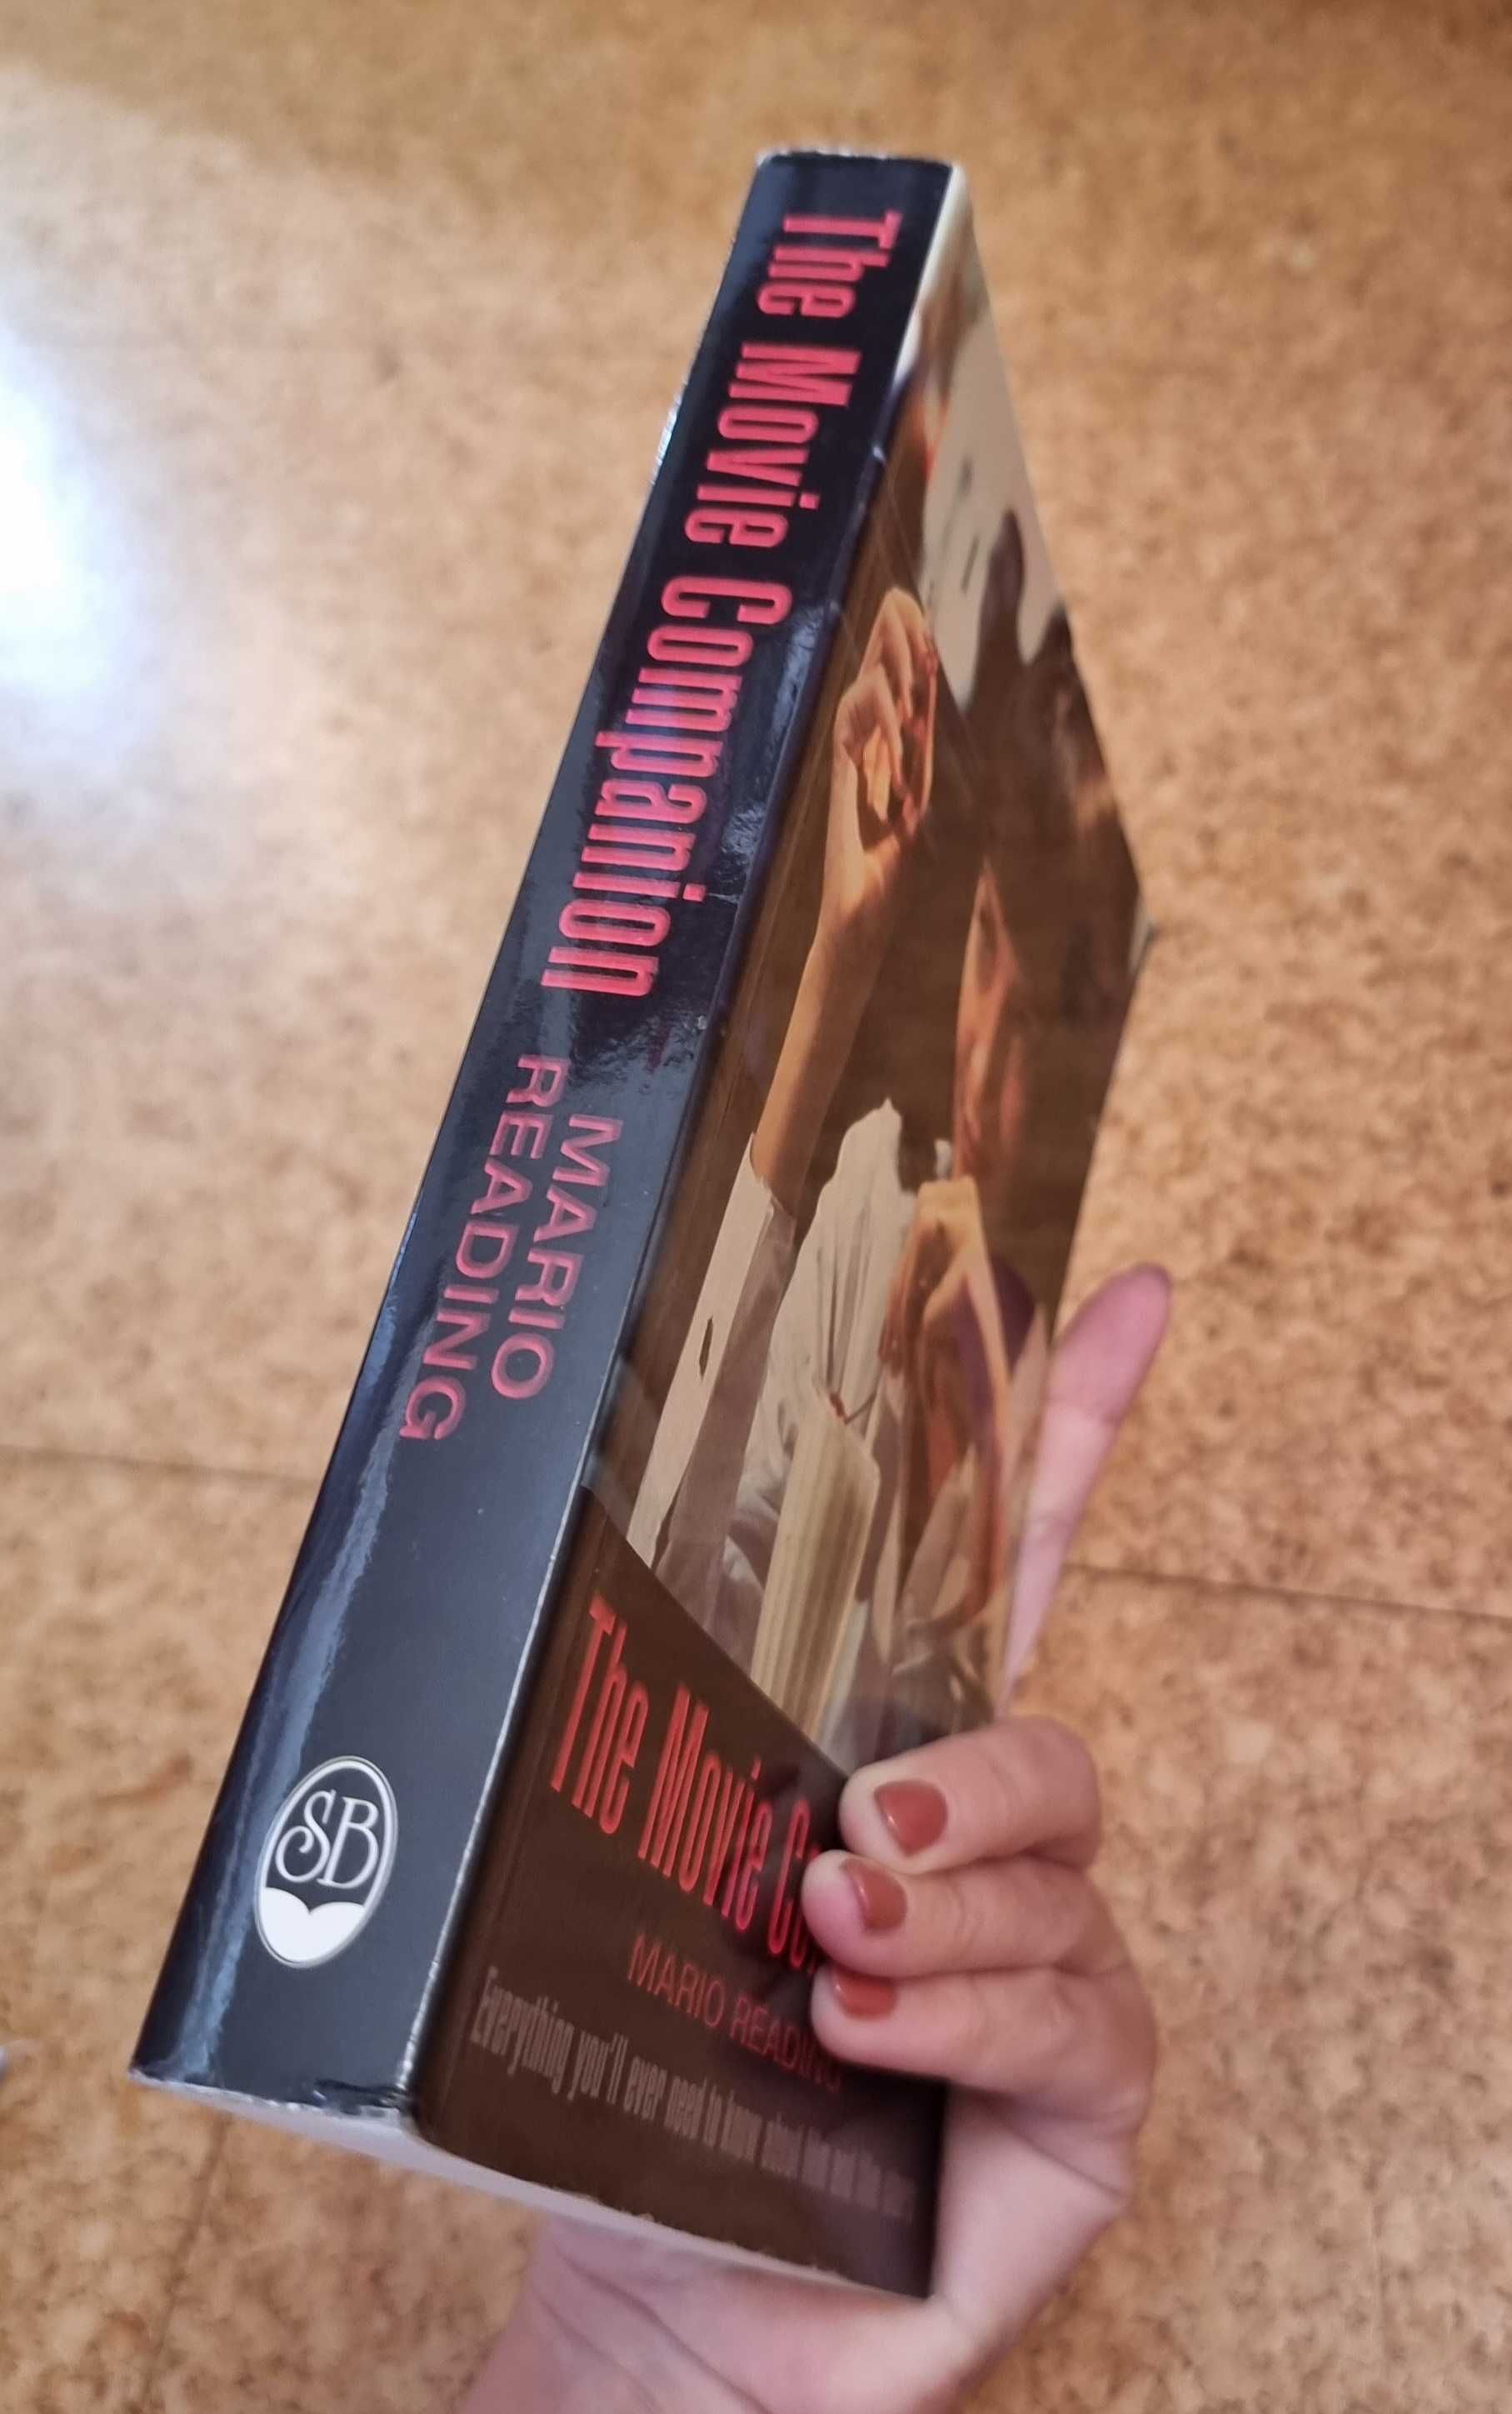 Livro "The Movie Companion" de Mario Reading (livro em Inglês)